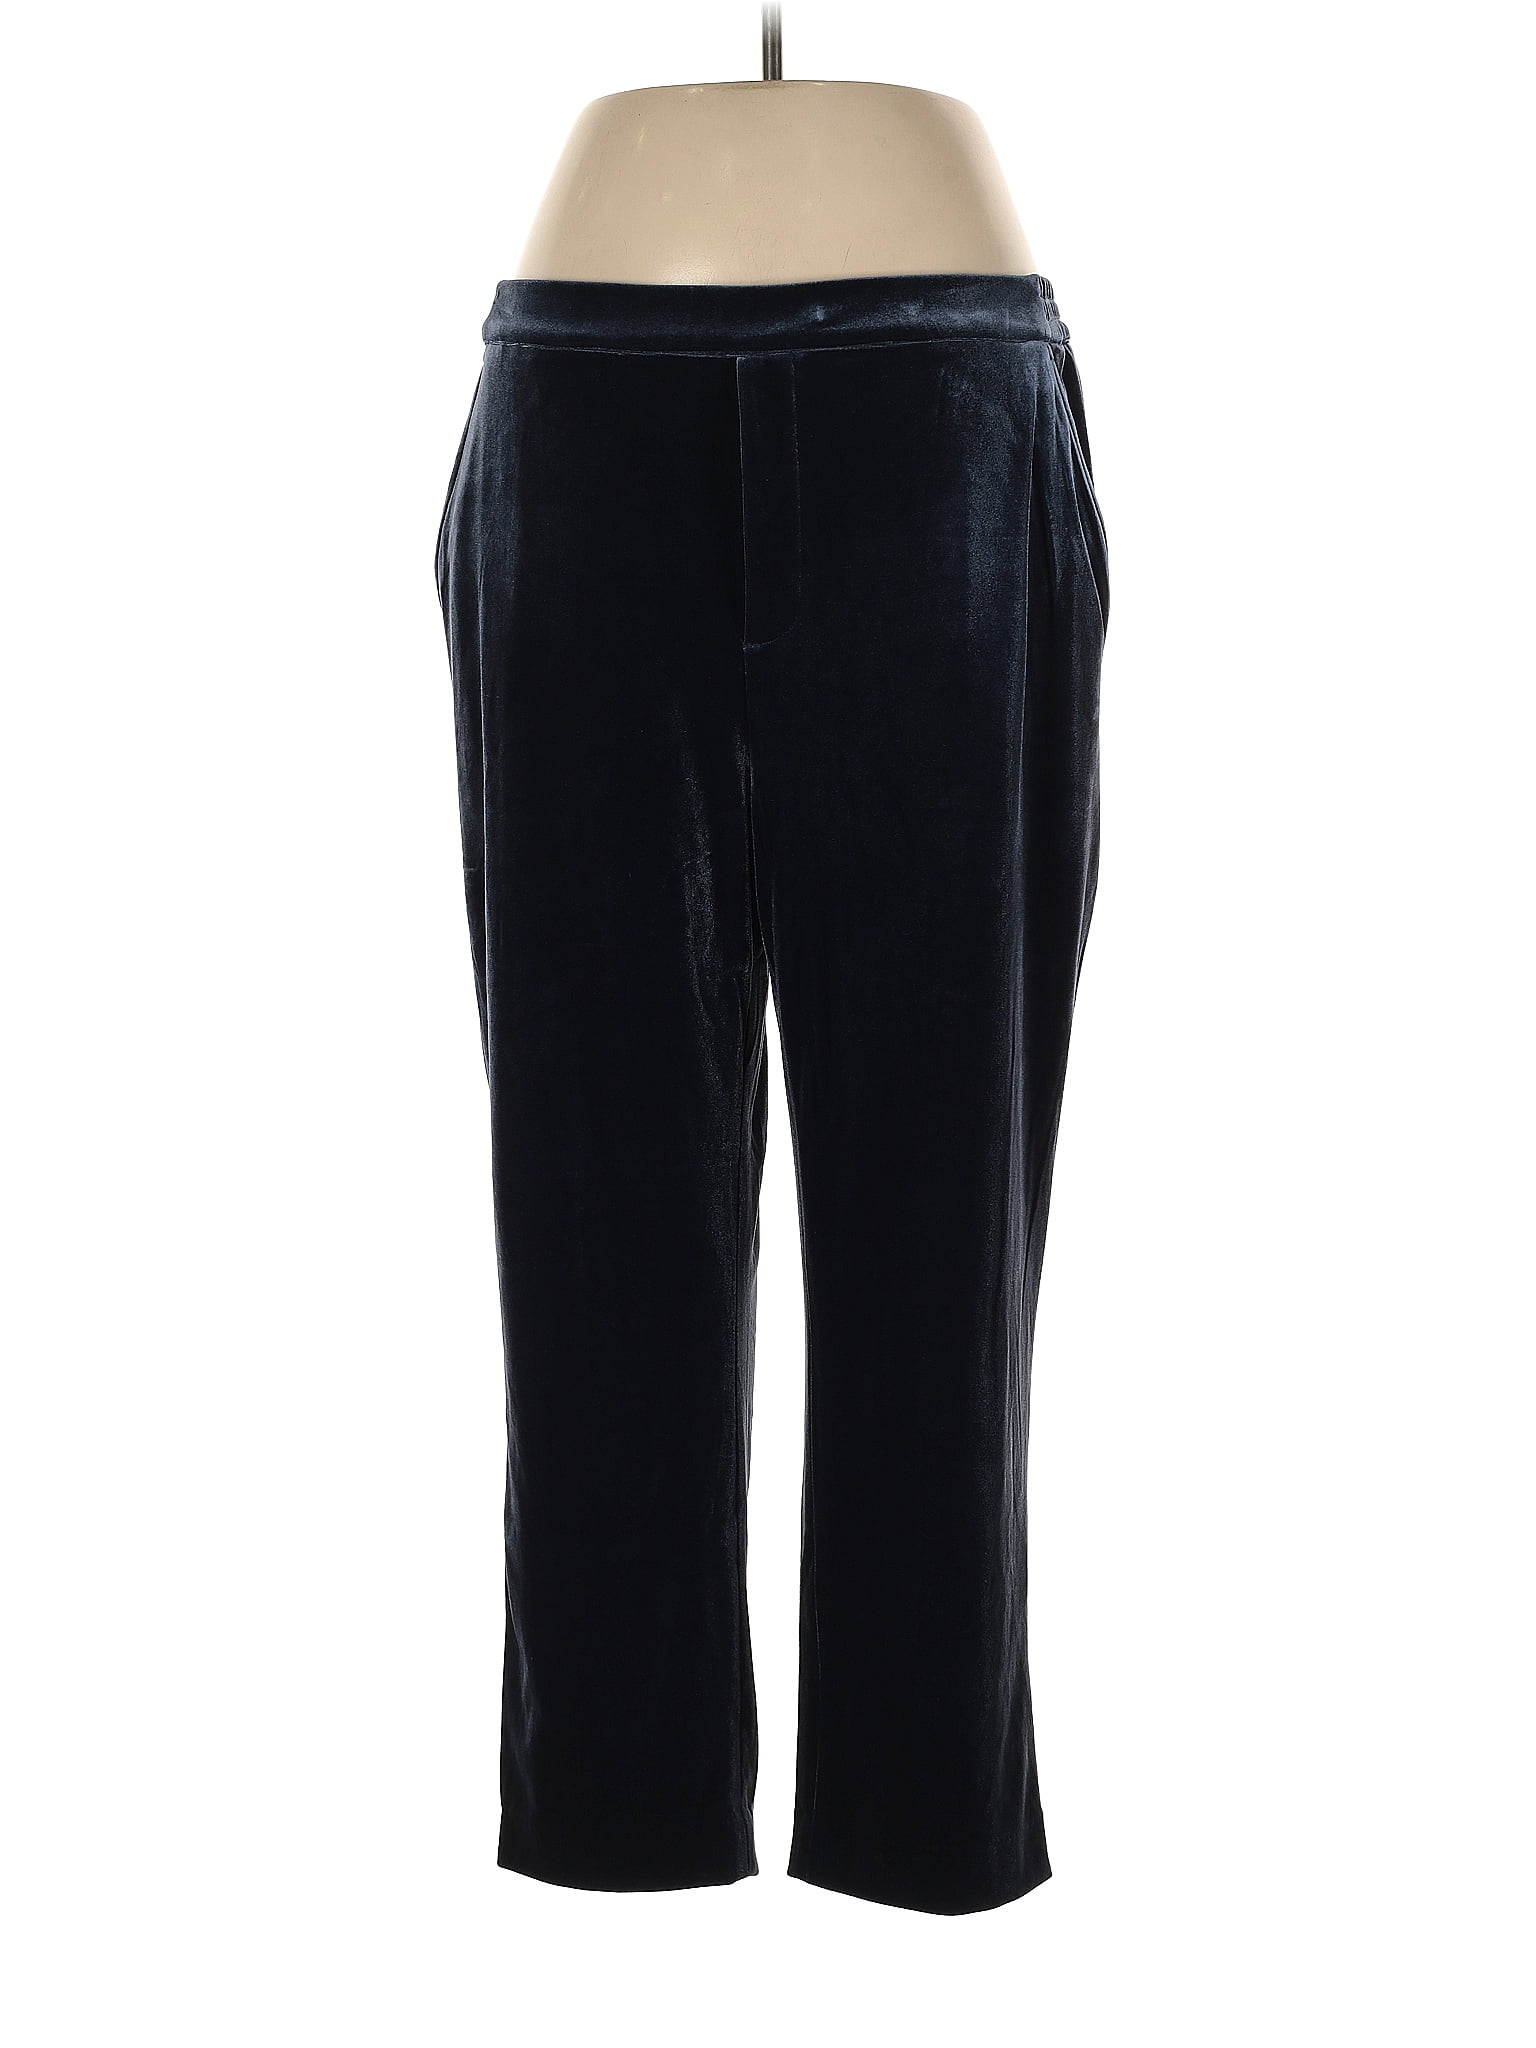 Draper James Solid Blue Velour Pants Size XL - 72% off